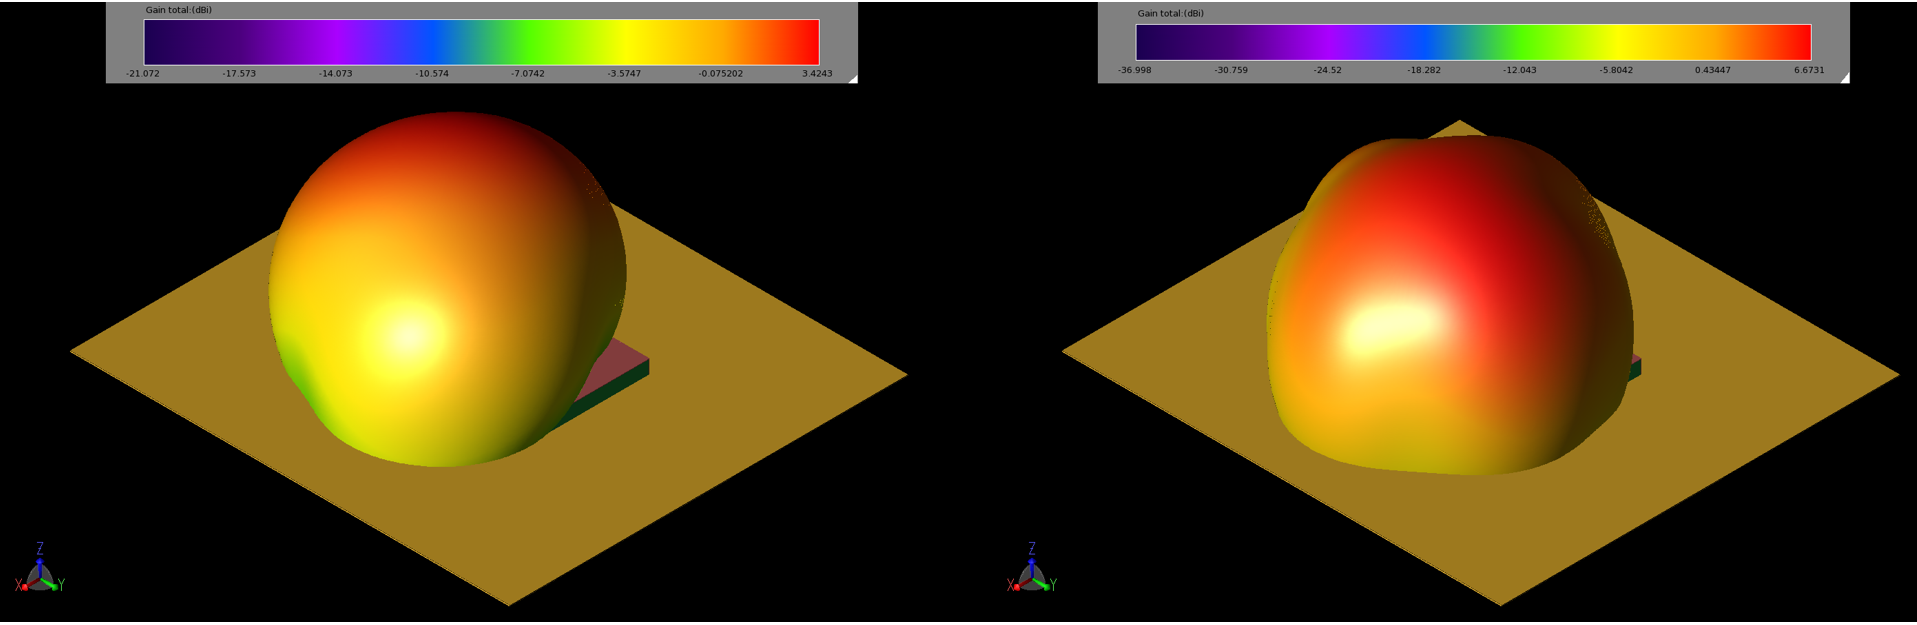 图 4：贴片在 2.45 千兆赫（左图 4a）和 5.5 千兆赫（右图 4b）的增益模式为球形，峰值增益分别为 3.4 和 6.7 dBi。